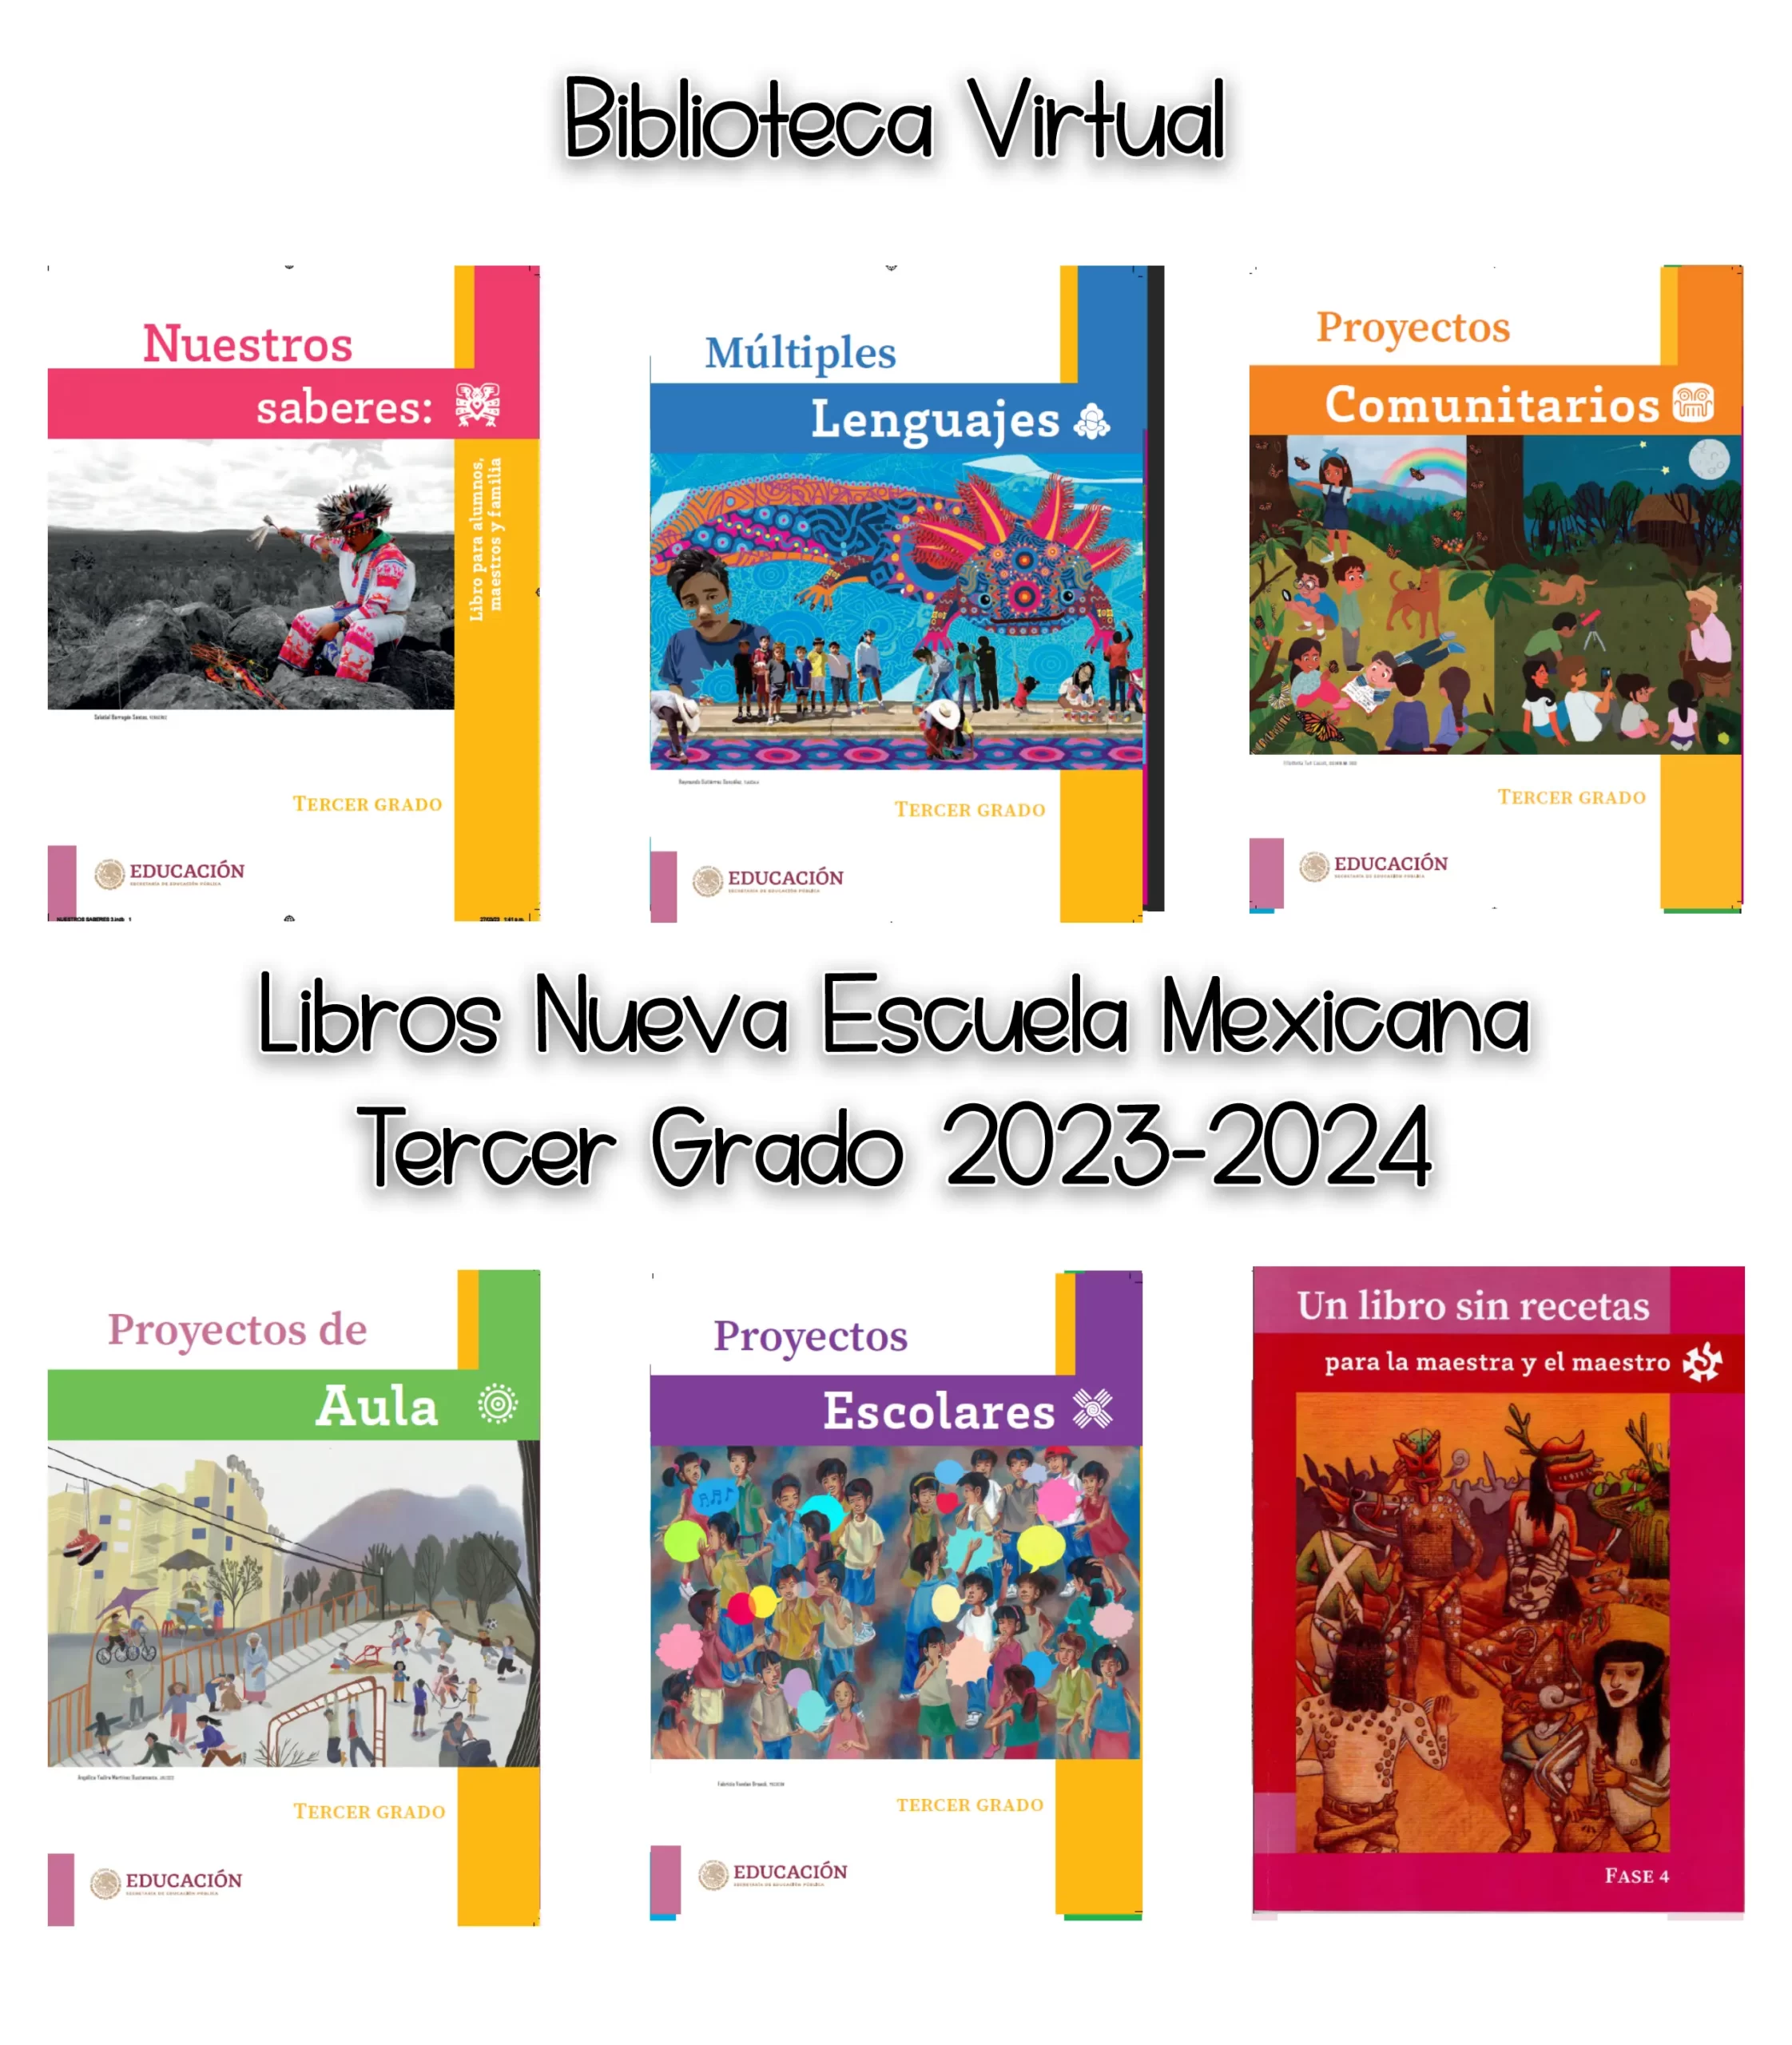 Libros Nueva Escuela Mexicana Tercer Grado